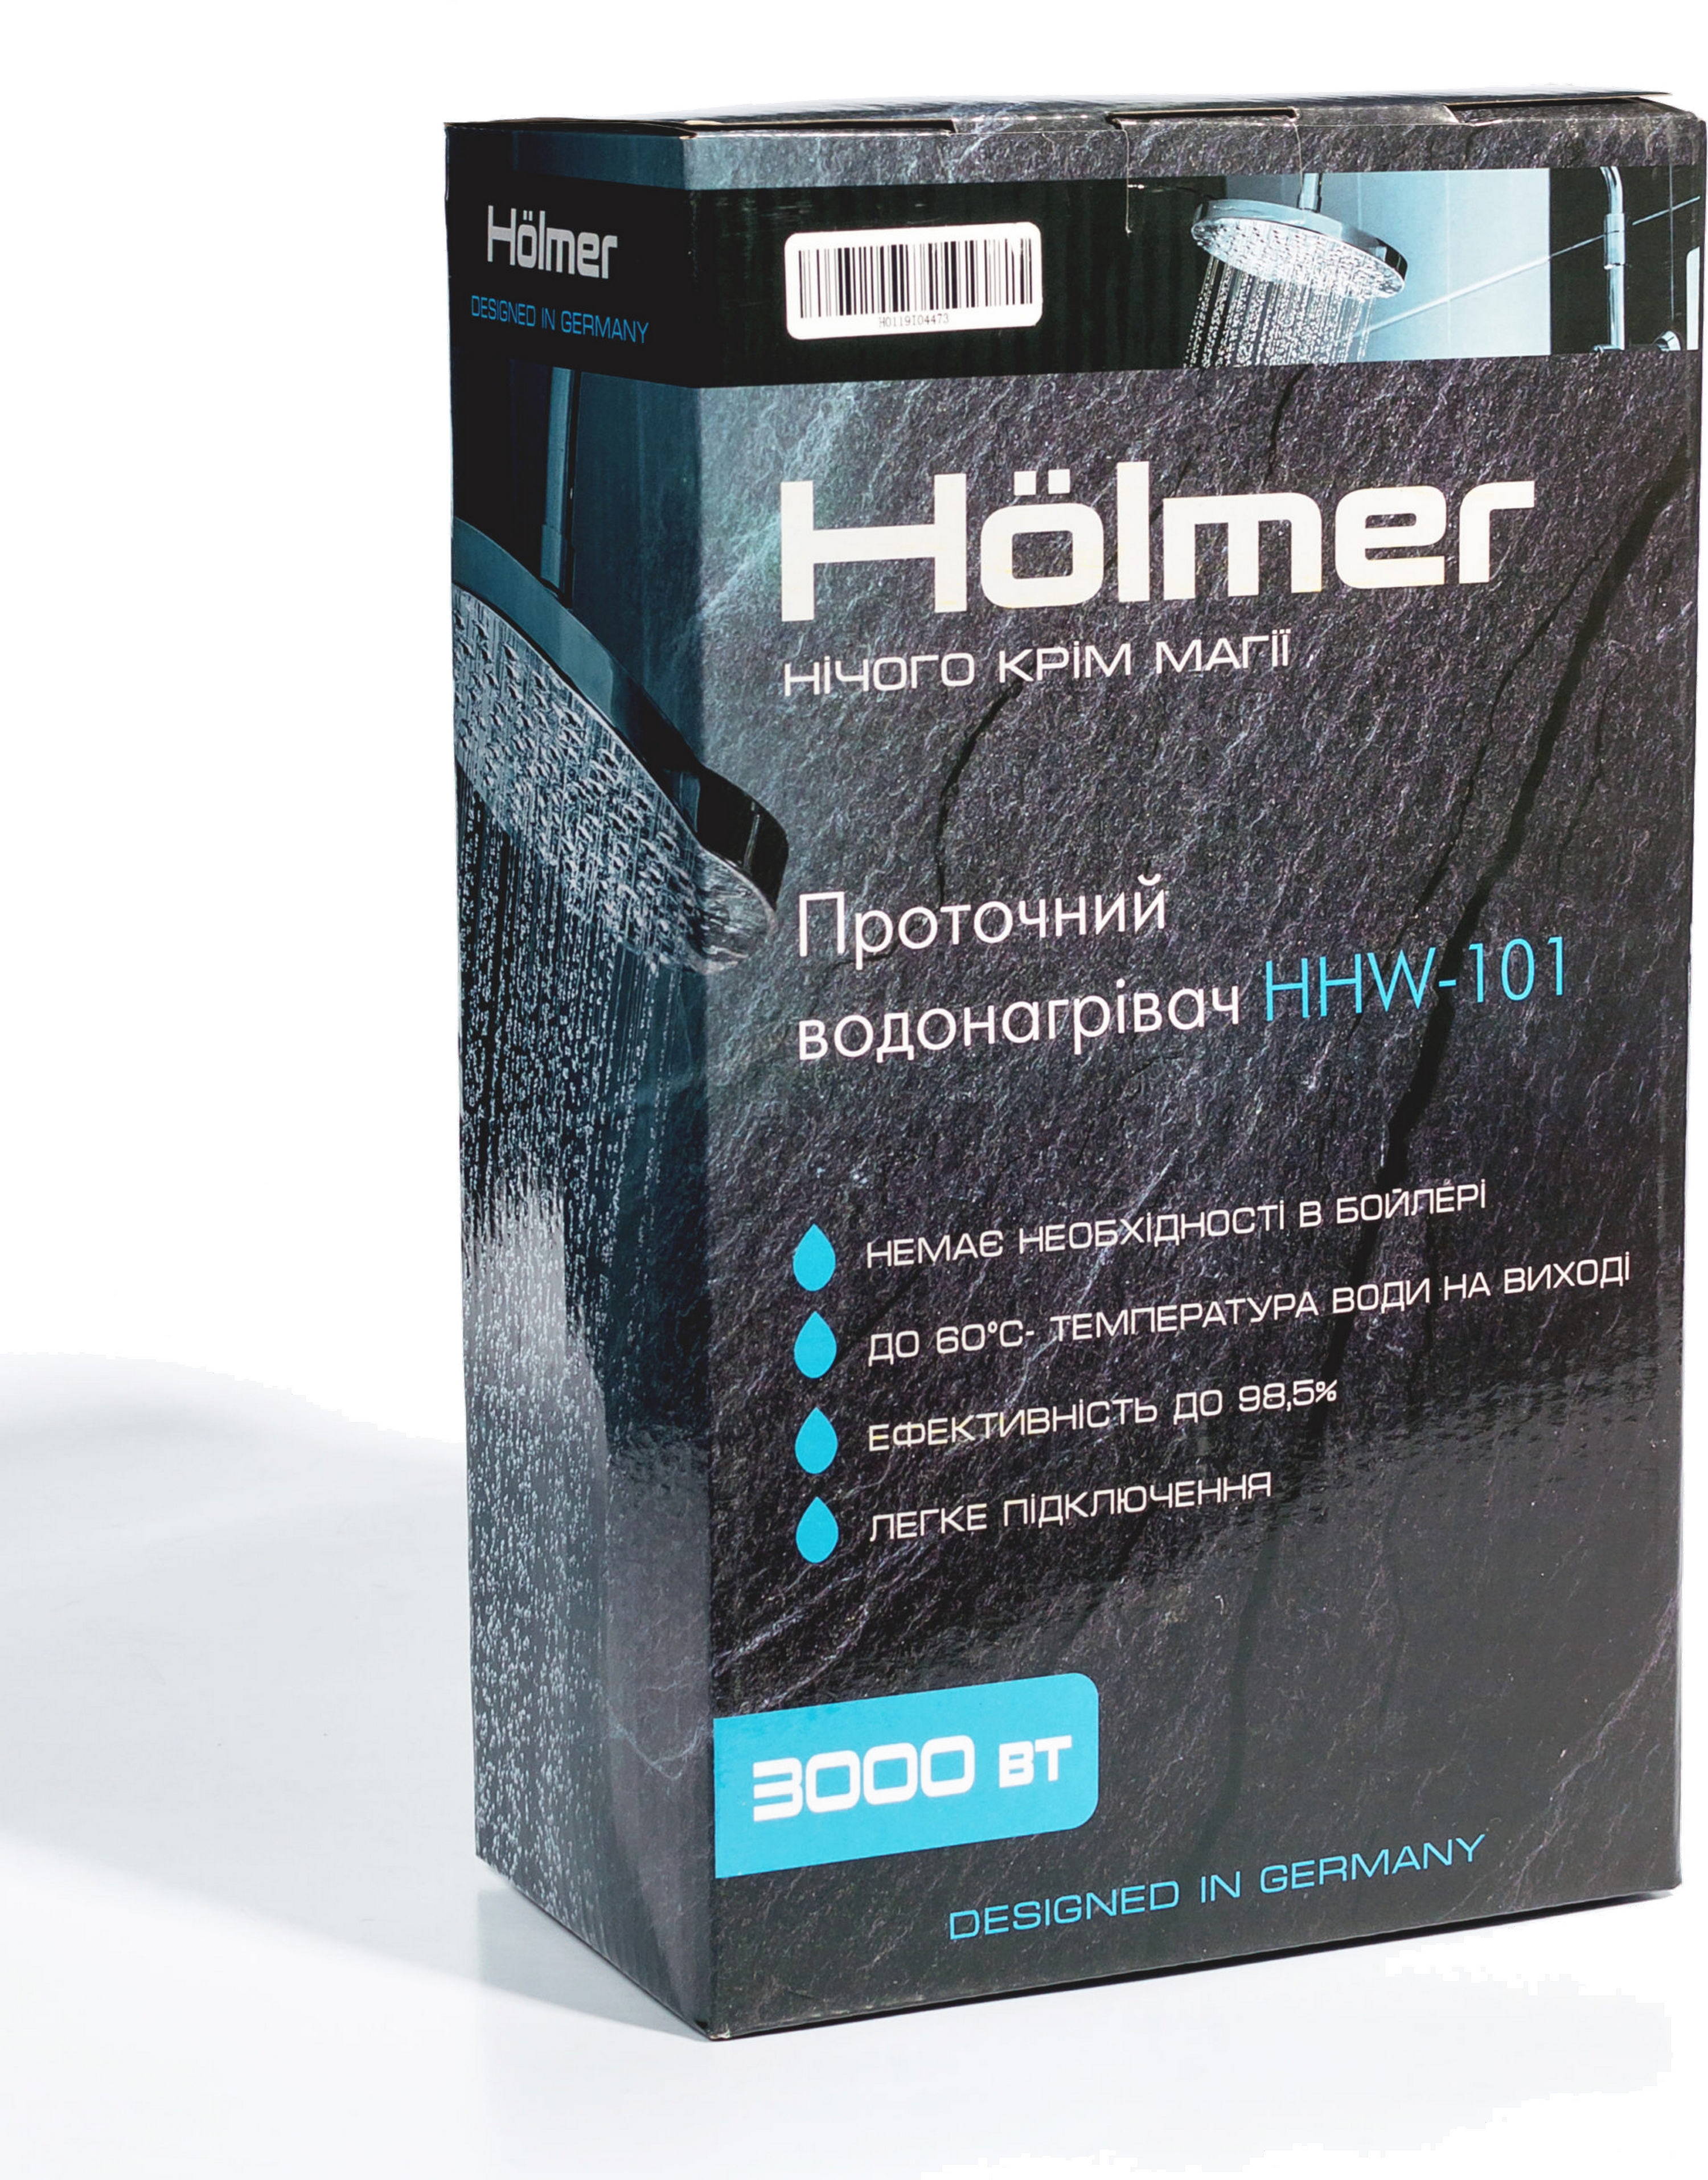 продаём Holmer HHW-101 в Украине - фото 4